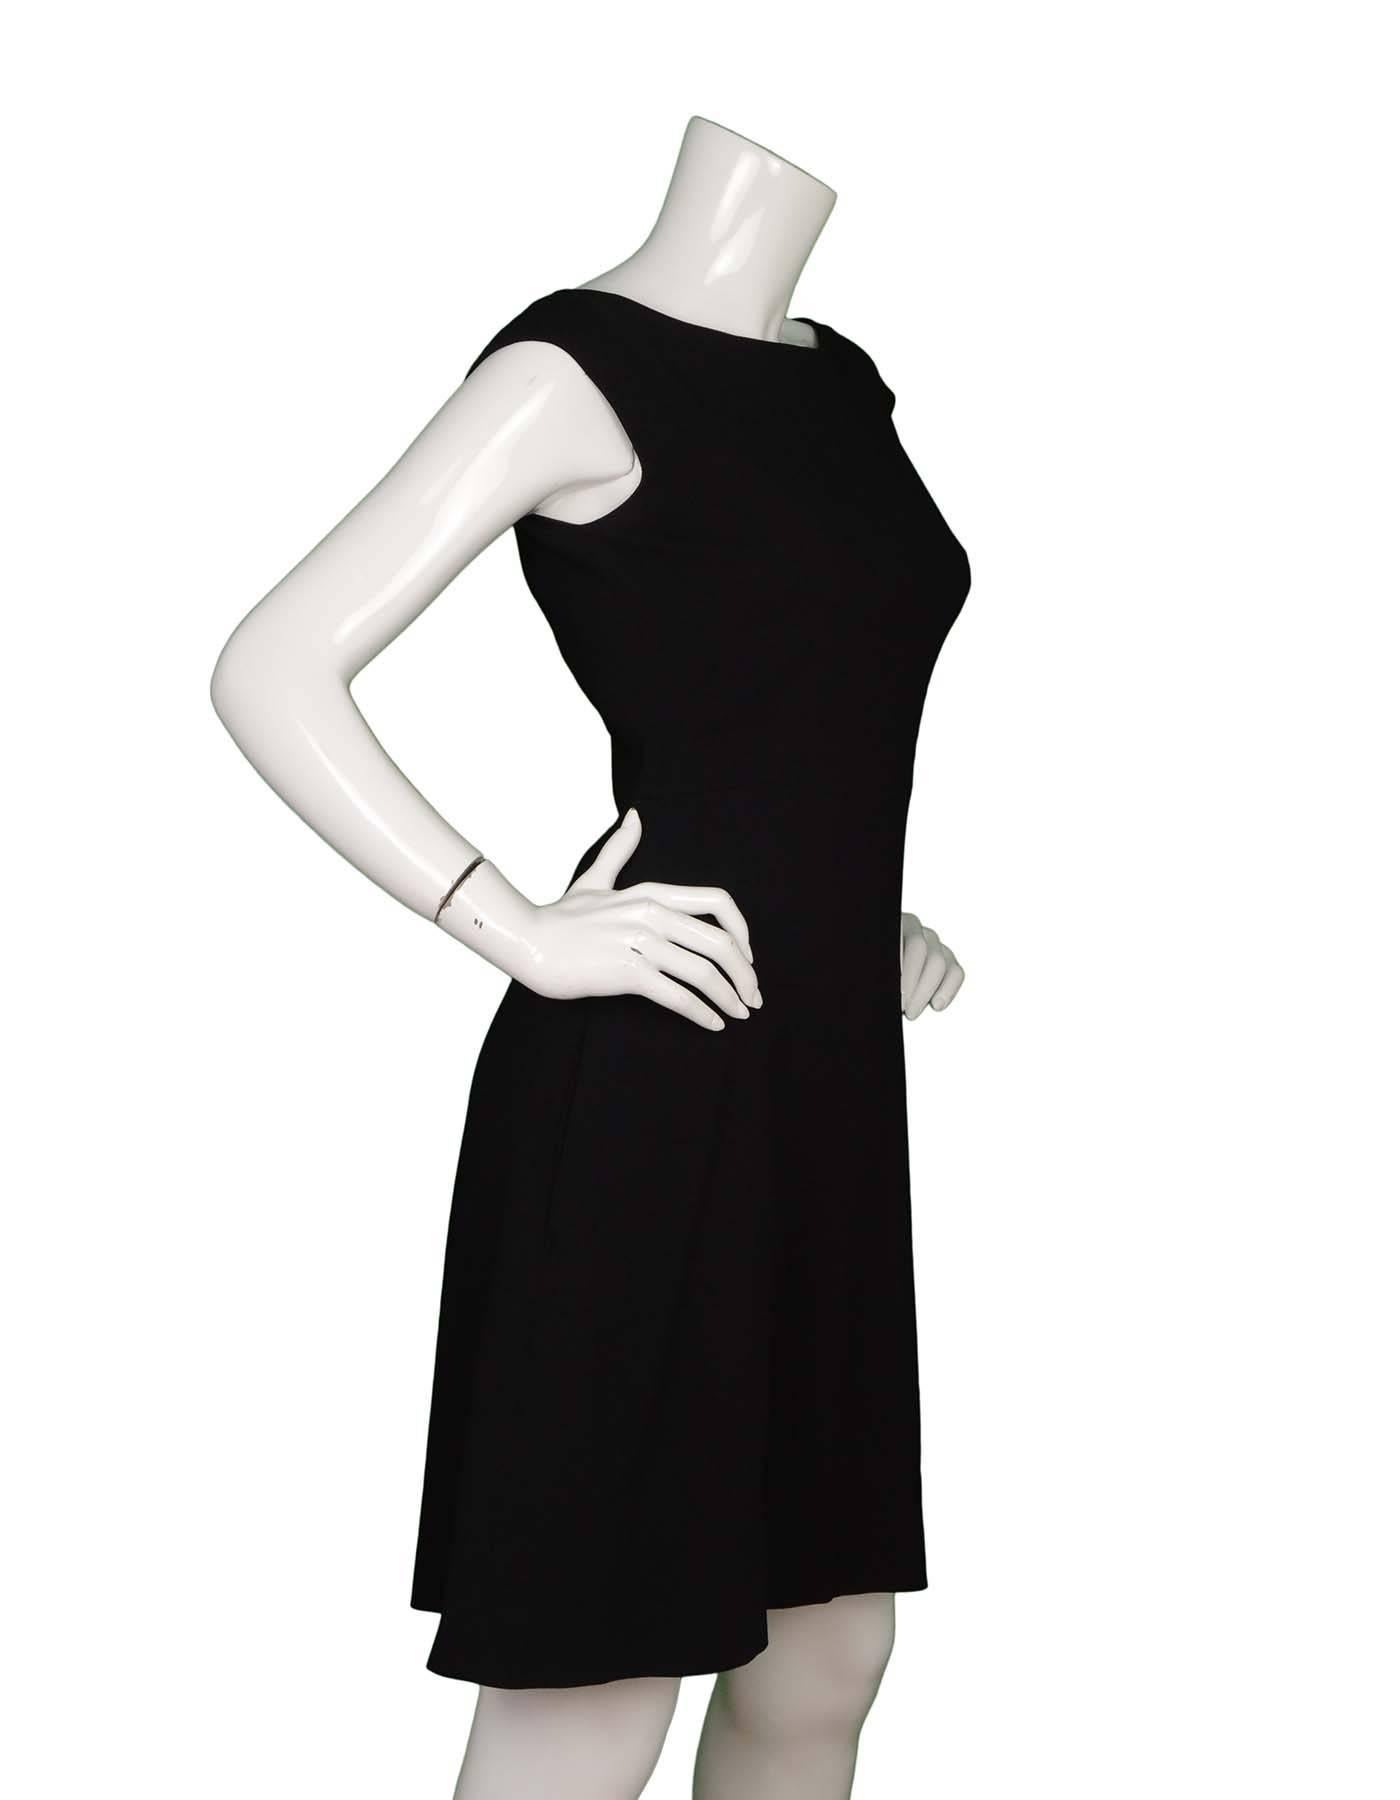 Prada Black Sleeveless A-Line Dress 
Made In: Romania
Color: Black
Composition: 98% viscose, 2% elastane
Lining: Black, 92% silk, 8% elastane
Closure/Opening: Back center zipper closure
Exterior Pockets: Two hip pockets
Interior Pockets: